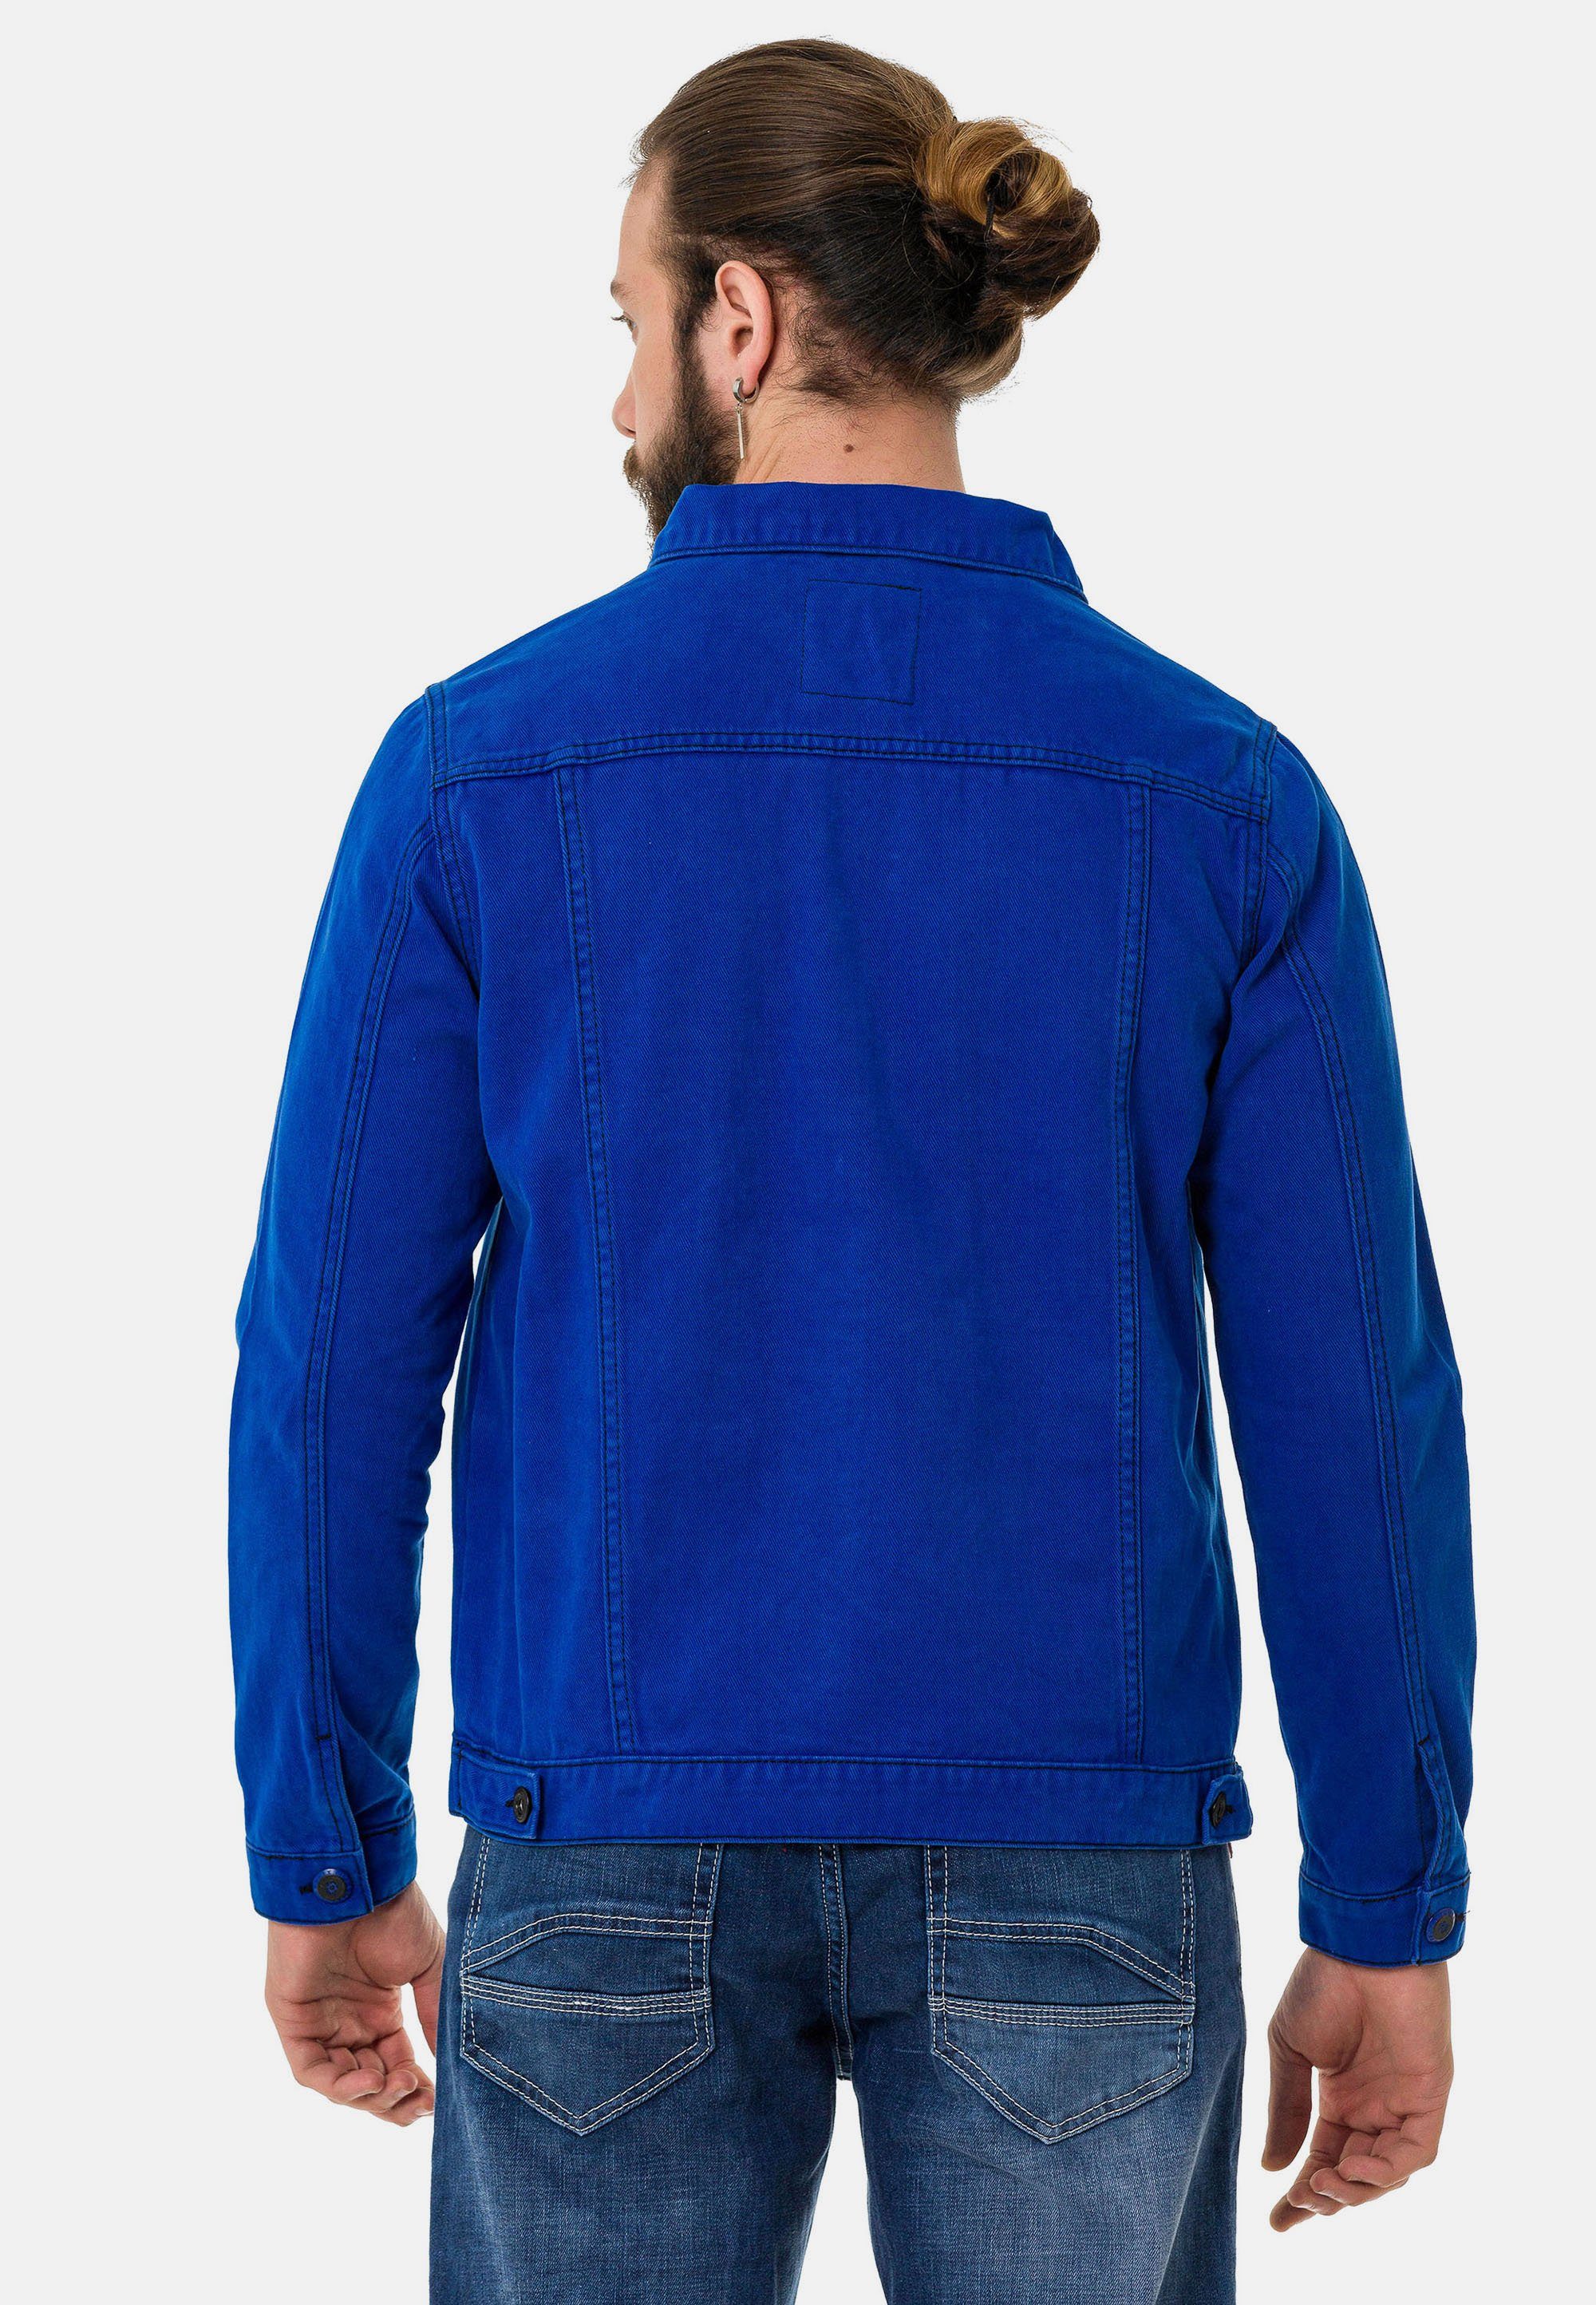 Brusttaschen aufgesetzten Cipo mit Baxx blau & Jeansjacke